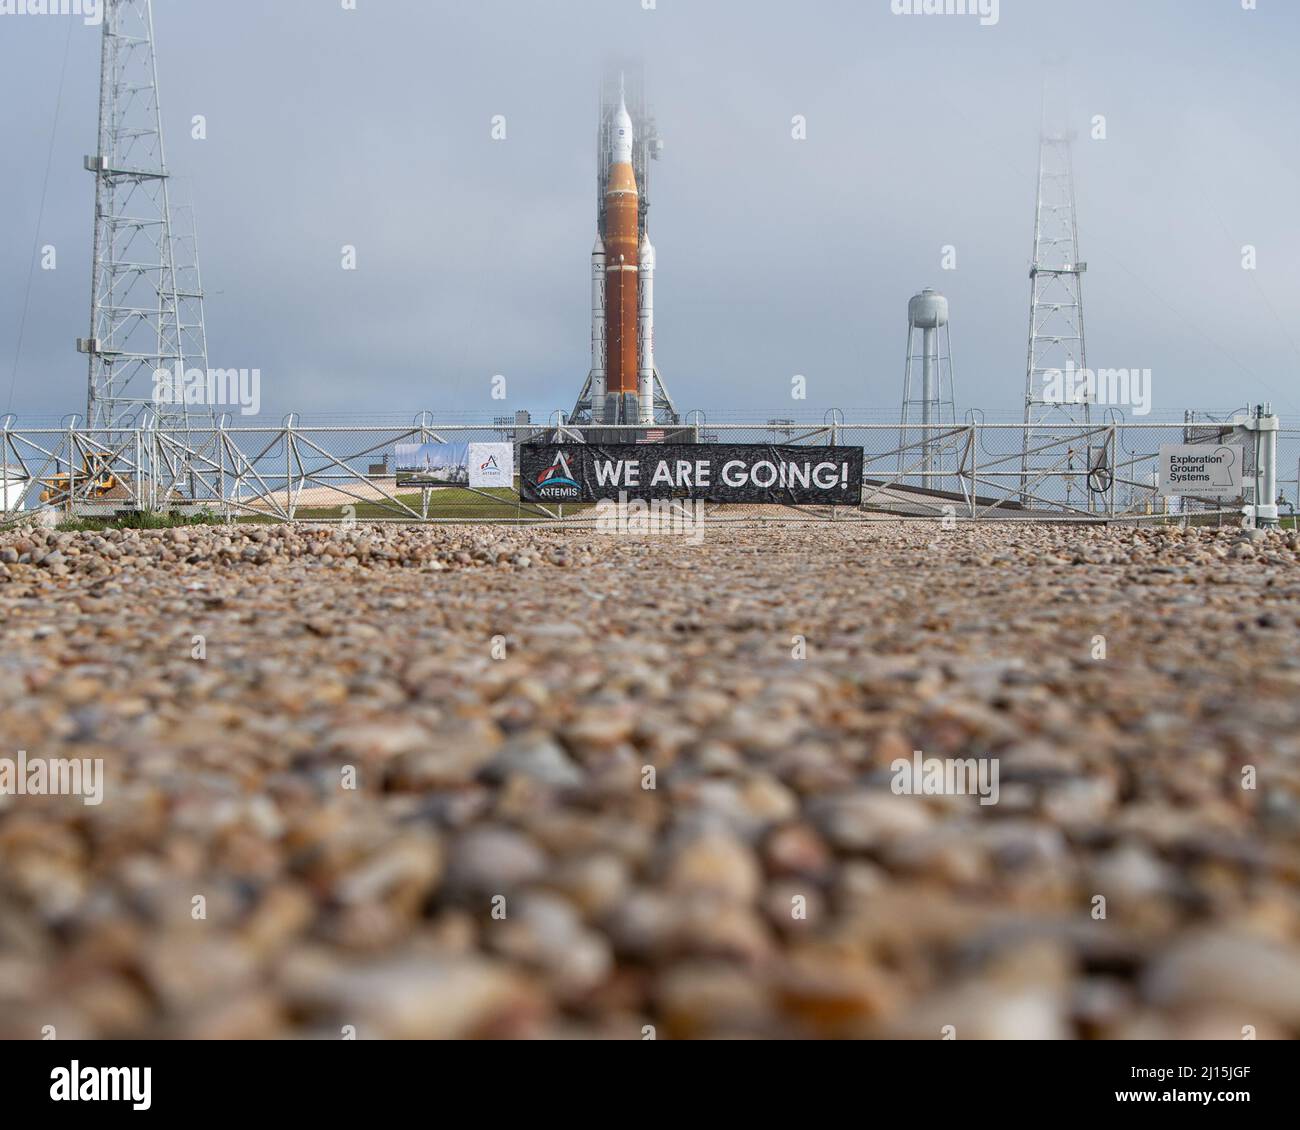 La fusée SLS (Space Launch System) de la NASA à bord de l'engin spatial Orion est vue au sommet d'un lanceur mobile au Launch Complex 39B, le vendredi 18 mars 2022, après avoir été déployée pour la première fois sur le plateau de lancement au Kennedy Space Center de la NASA en Floride. Avant l'essai en vol Artemis I de la NASA, la fusée SLS et l'engin spatial Orion entièrement empilés et intégrés feront l'objet d'une répétition en robe humide au Launch Complex 39B pour vérifier les systèmes et pratiquer les procédures de compte à rebours pour le premier lancement. Crédit photo : (NASA/Joel Kowsky) Banque D'Images